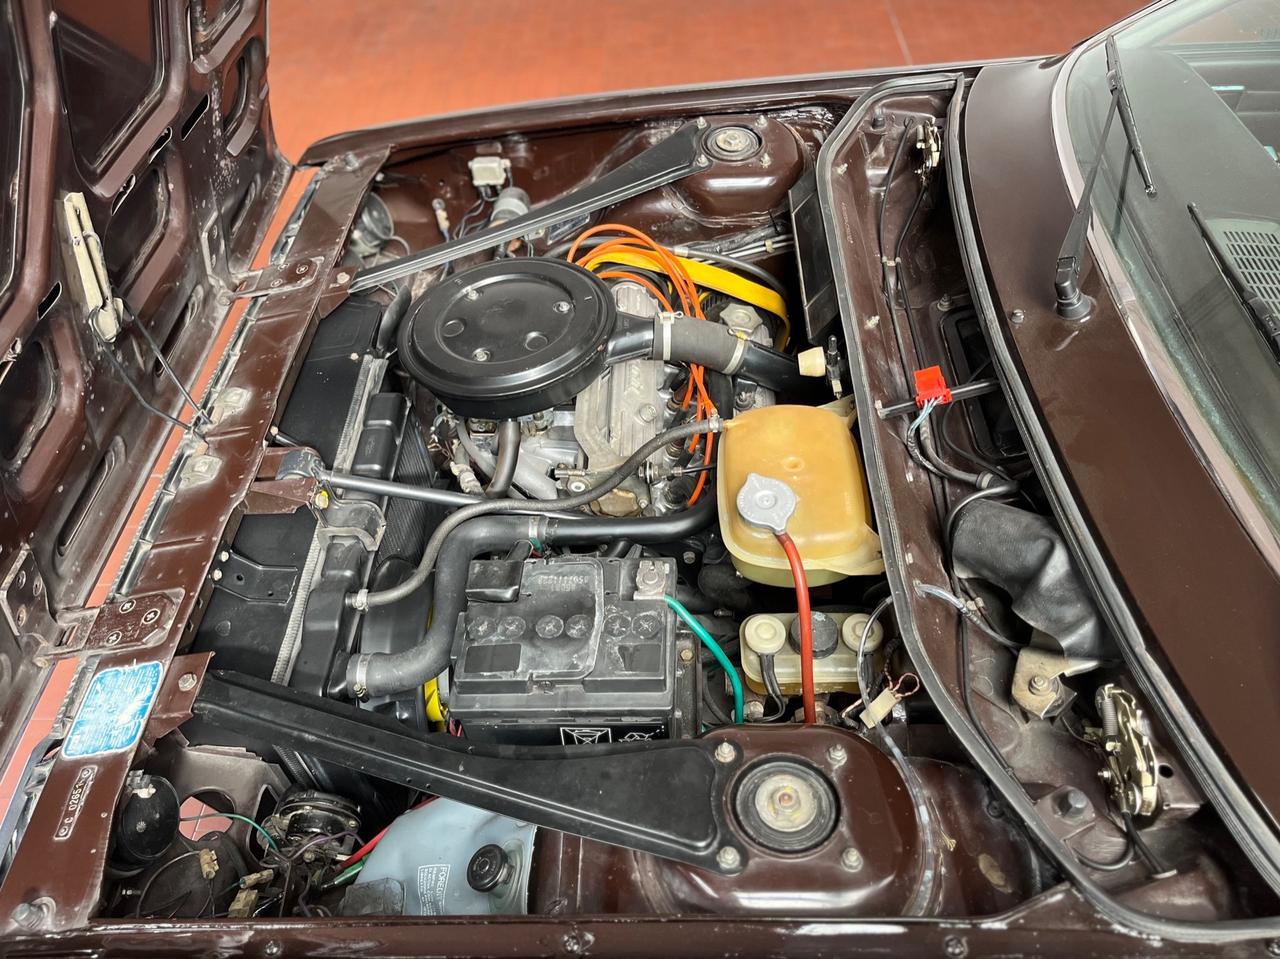 Lancia Beta Coupe 1.3